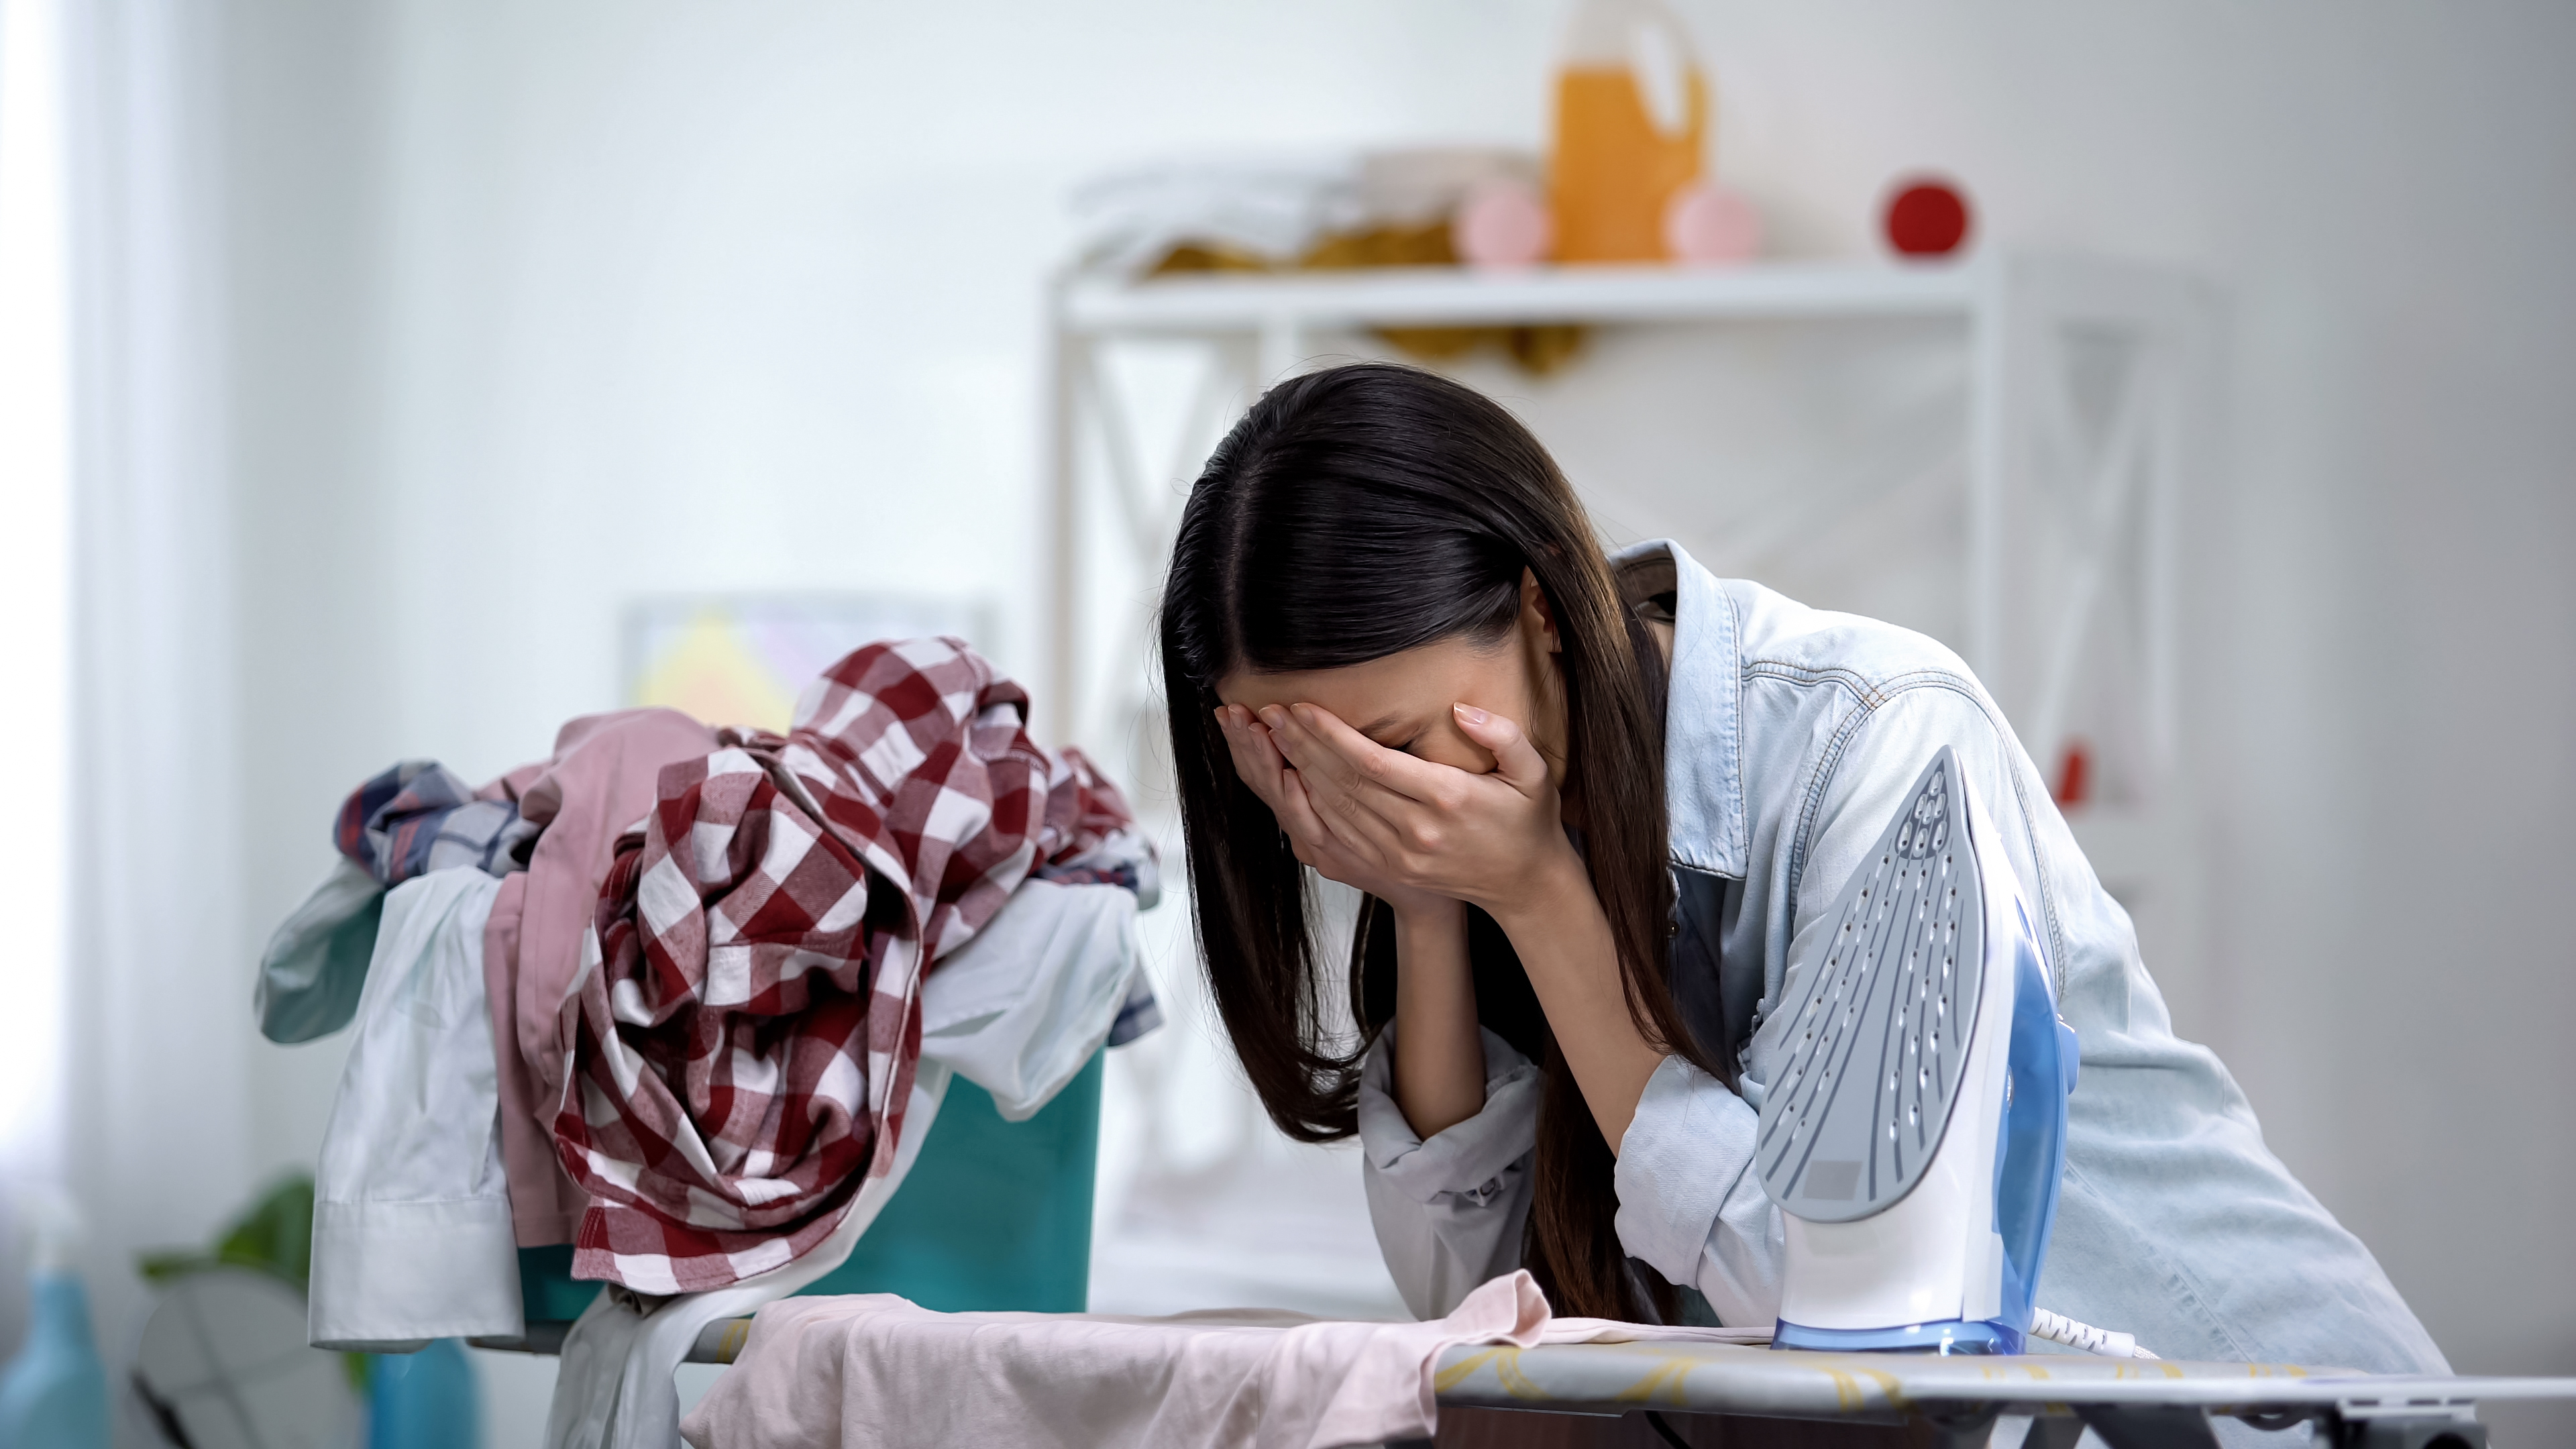 Eine Frau hat einen emotionalen Zusammenbruch, während sie sich auf das Bügelbrett stützt | Quelle: Shutterstock